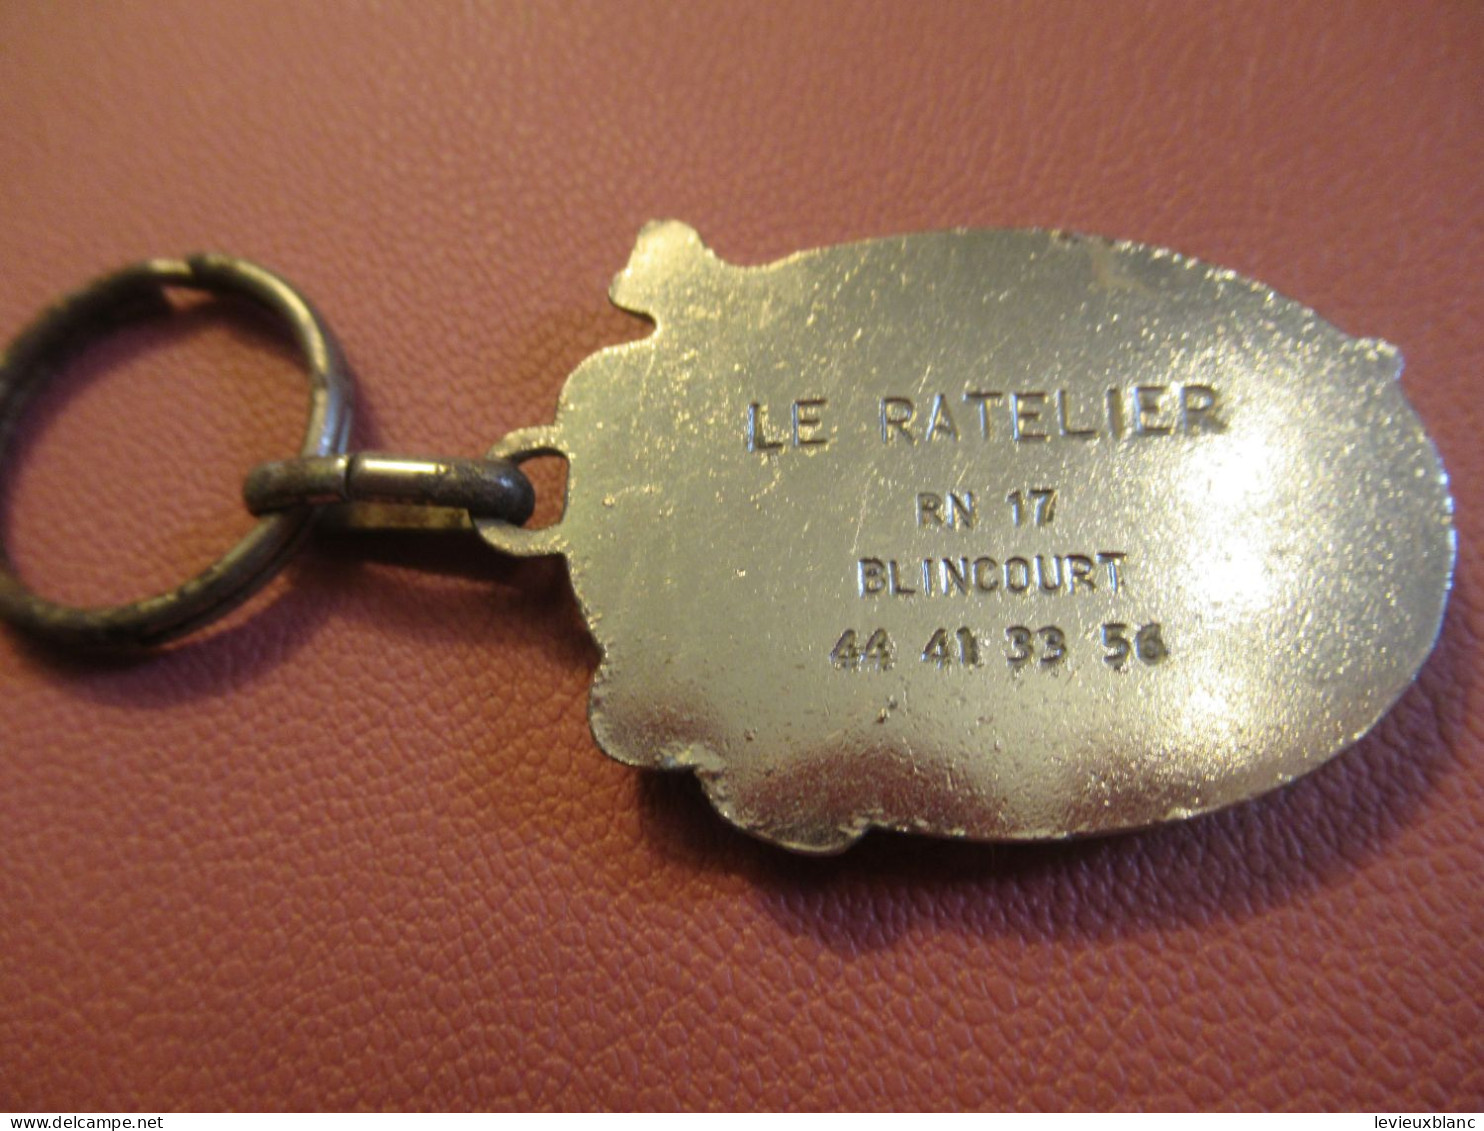 Porte-clé Ancien/ Bar /  Le RATELIER/ RN 17/ Elincourt/ Vers 1960-1970           POC758 - Sleutelhangers